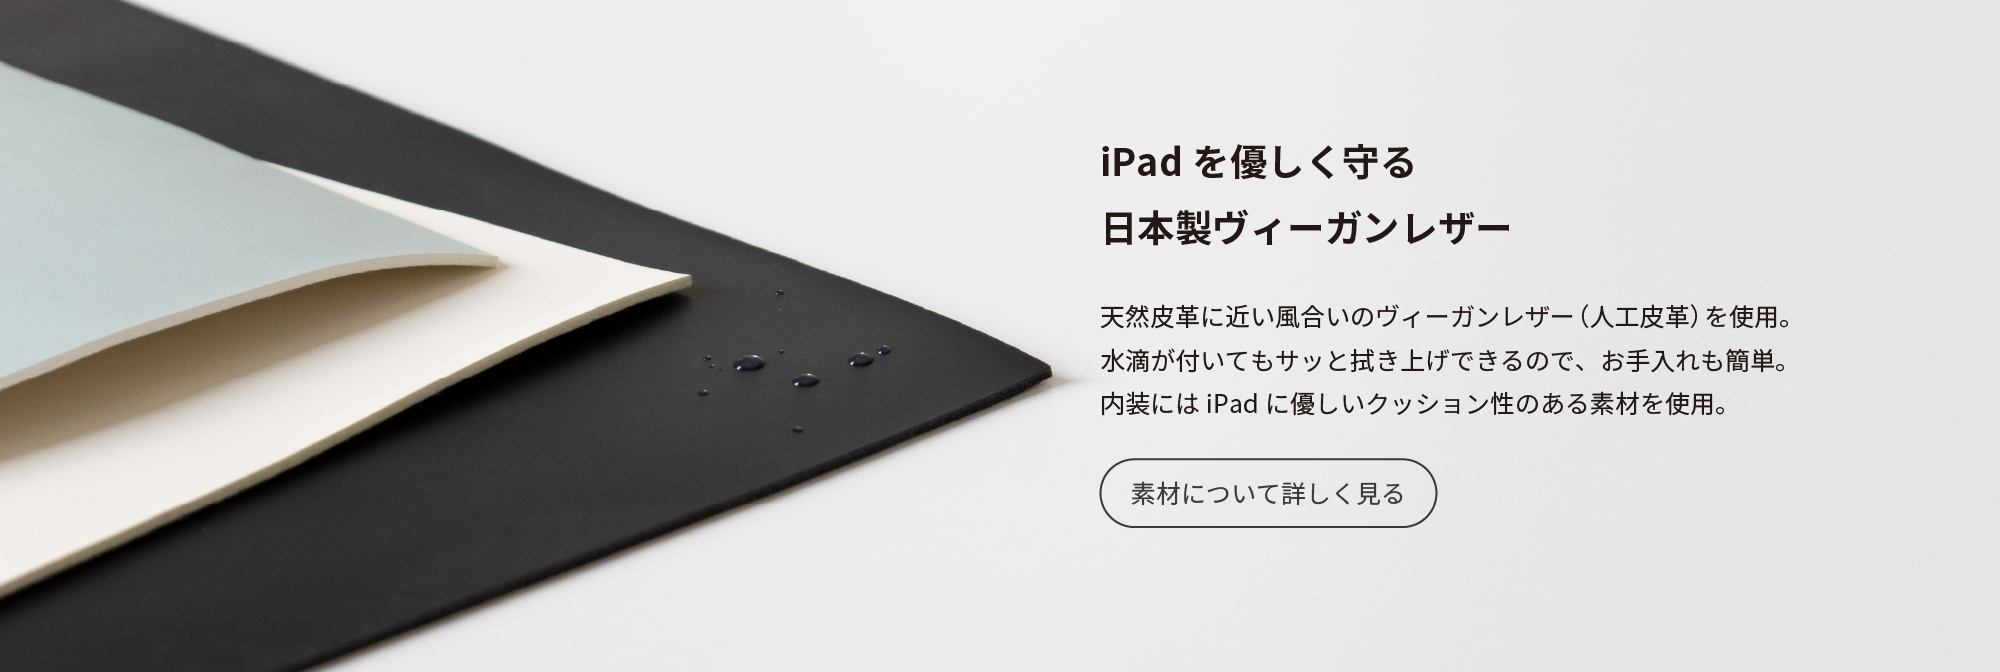 iPadを優しく守る日本製ヴィーガンレザー　天然皮革に近い風合いのヴィーガンレザー（人工皮革）を使用。水滴が付いてもサッと拭き上げ出来るので、お手入れも簡単。内装にはiPadにやさしいクッション性のある素材を使用。